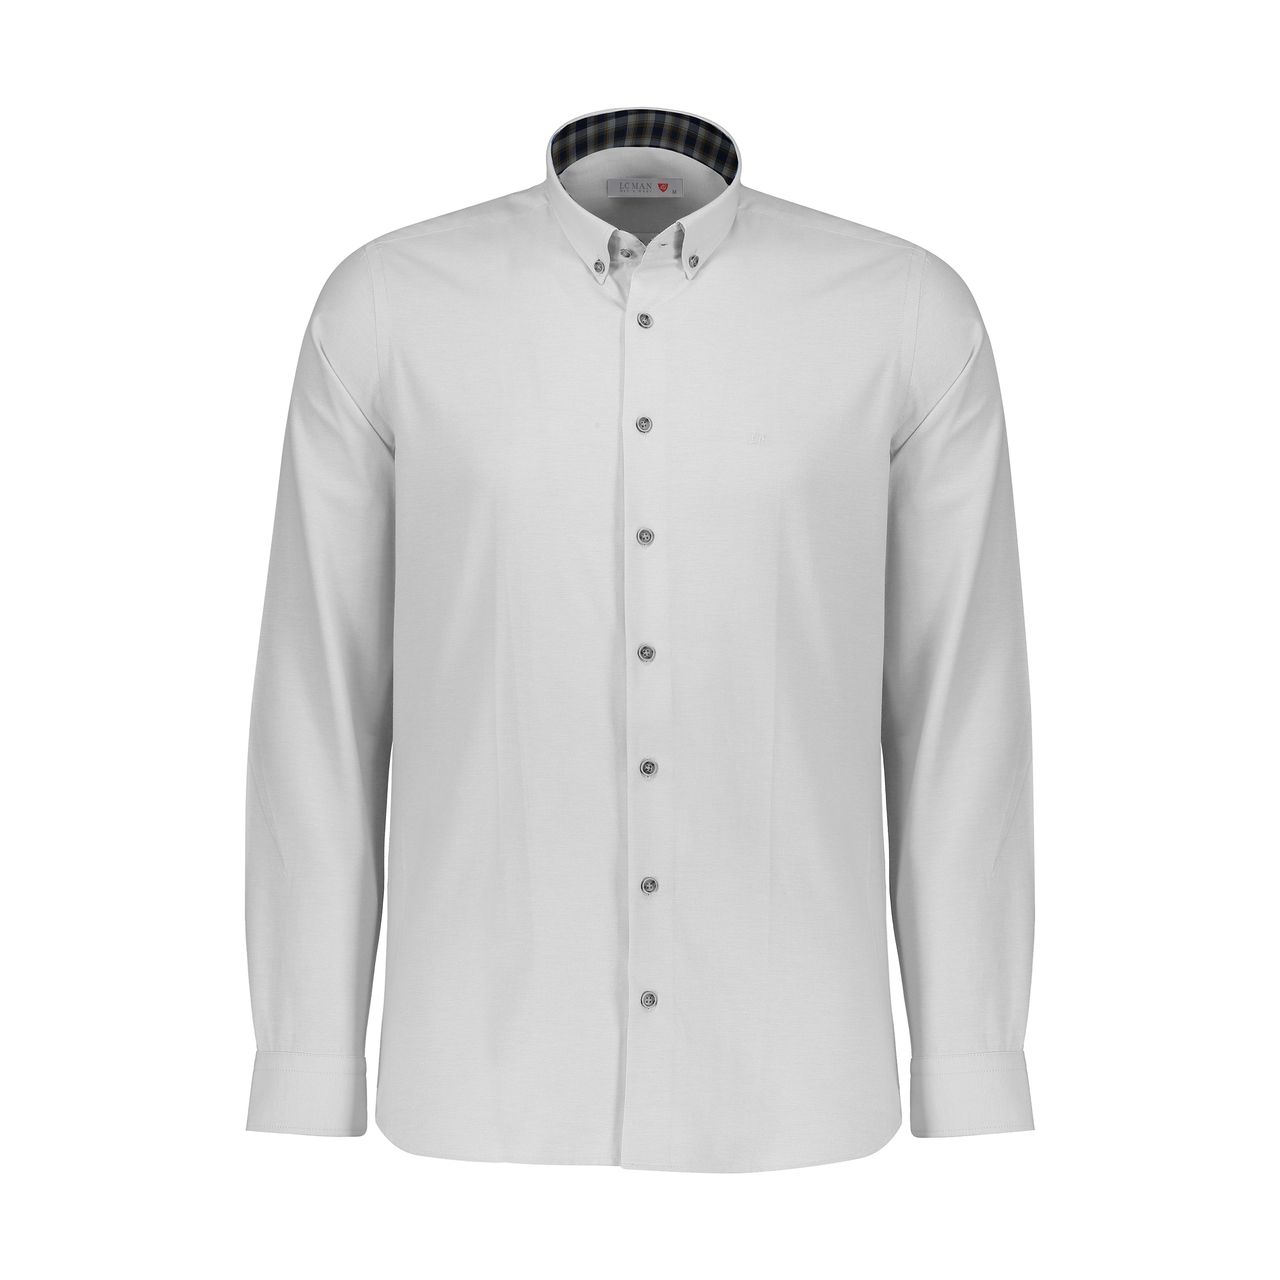 پیراهن مردانه ال سی من مدل 02141032-400